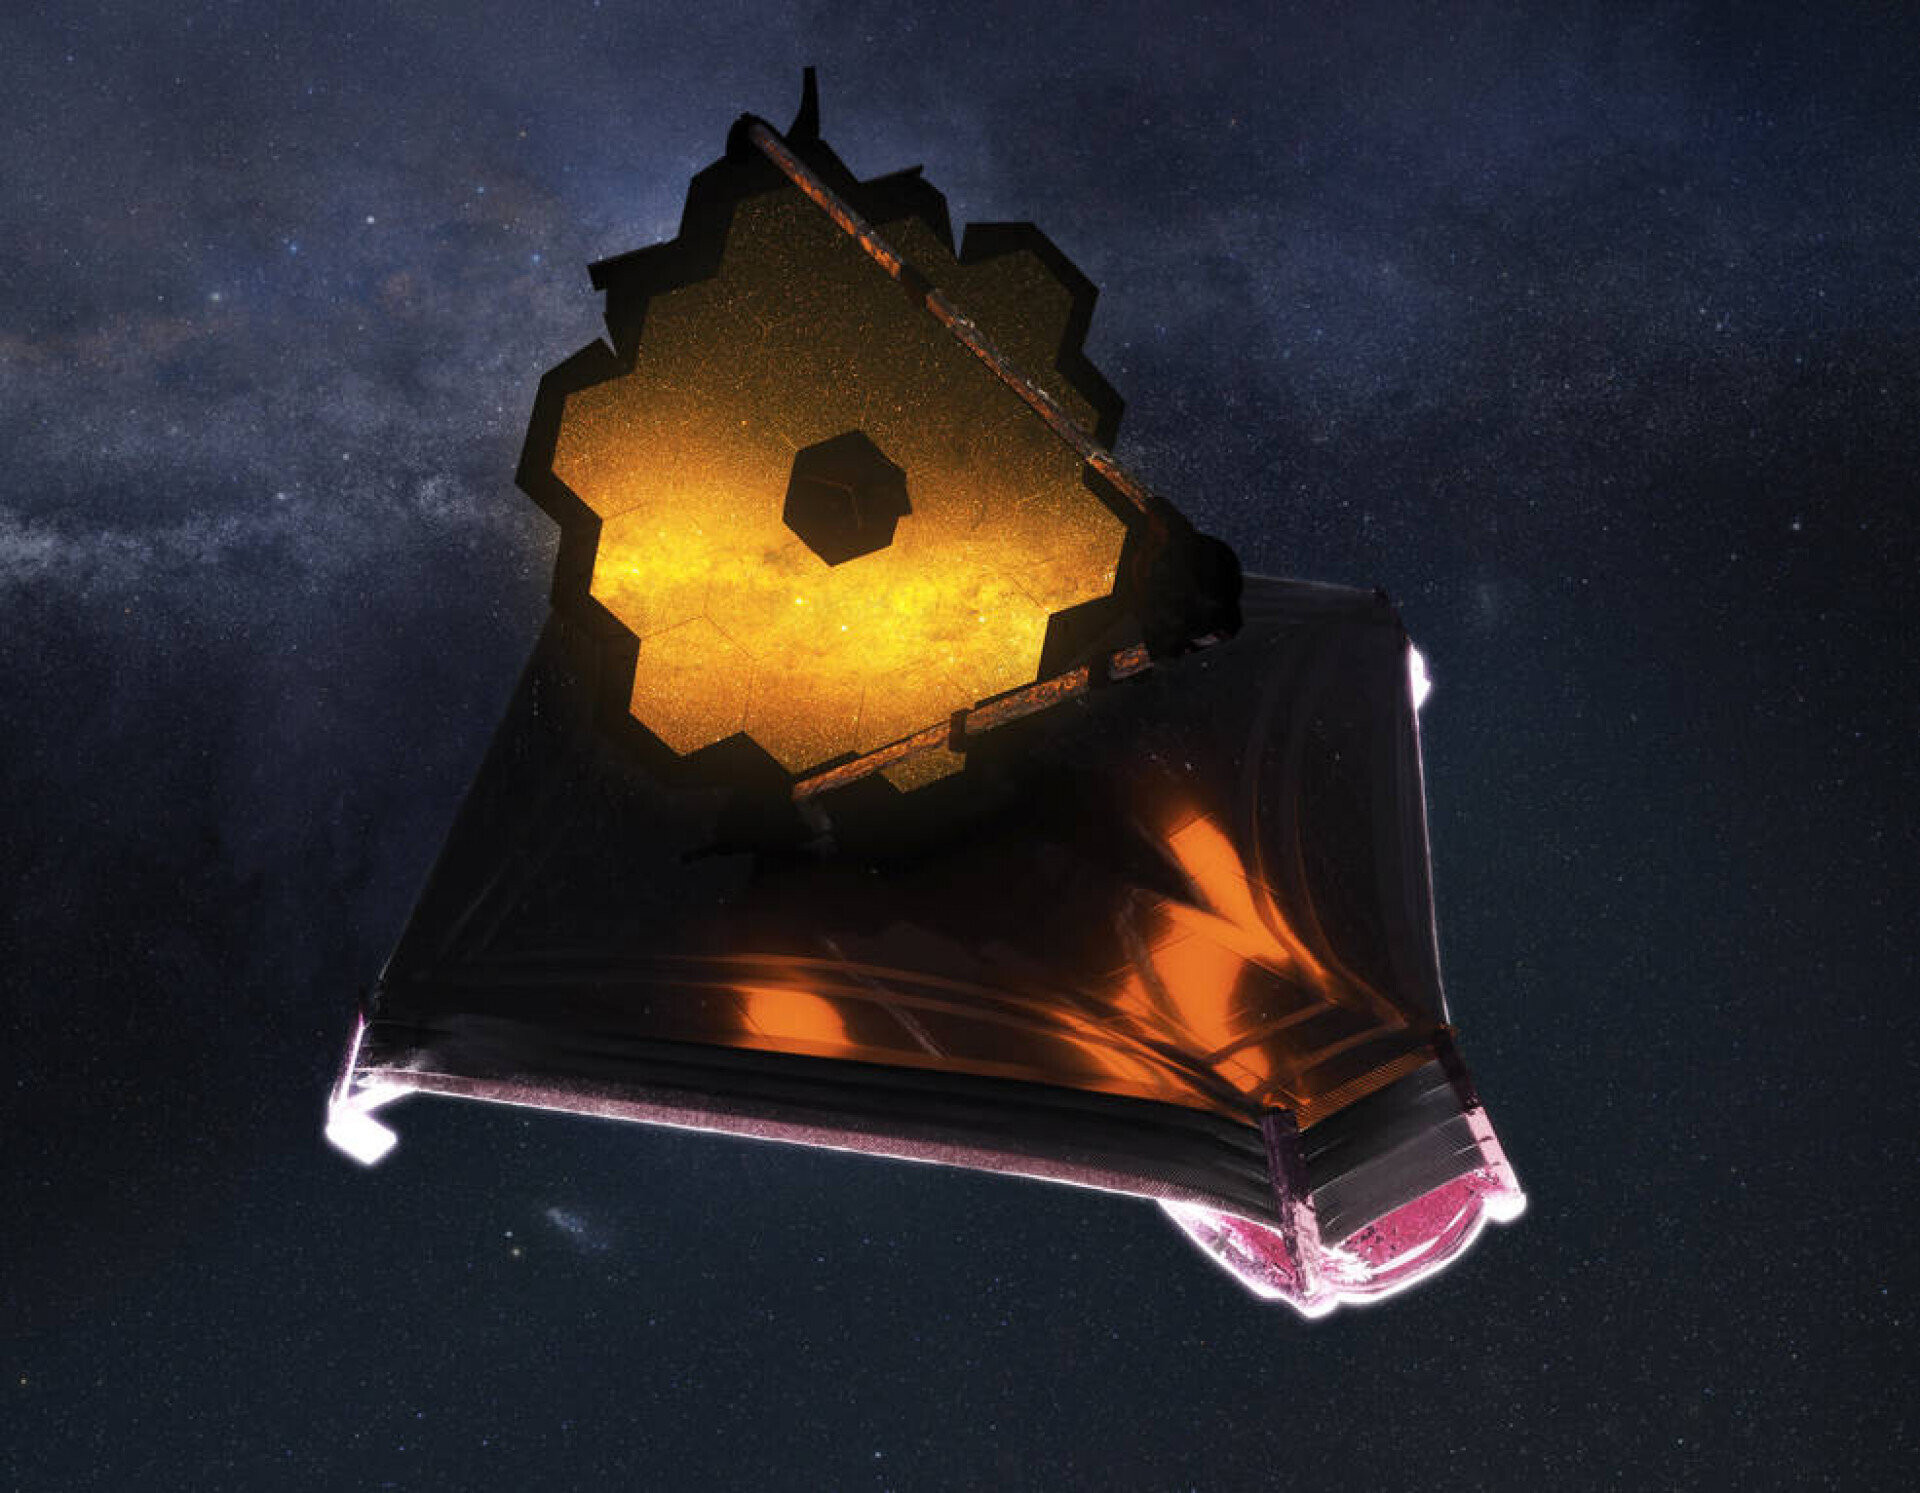 Kính viễn vọng Không gian James Webb hoạt động được hơn một năm trở lại đây. Nó đã thay đổi nhận thức của chúng ta về vũ trụ. Trước khi di chuyển đến vị trí hiện tại ở Lagrange Point 2, cách Trái Đất khoảng một triệu dặm, James Webb được quảng cáo là thiết bị thiên văn quan trọng sẽ đưa nhân loại bước vào kỷ nguyên mới của ngành thiên văn học. Đúng như vậy, chỉ khoảng một tuần sau khi bắt đầu quan sát thăm dò, nó đã cho chúng ta thấy hình ảnh của thiên hà xa nhất, lâu đời nhất từng được quan sát, GLASS-z13 13,5 tỷ năm tuổi. (Ảnh: Google)